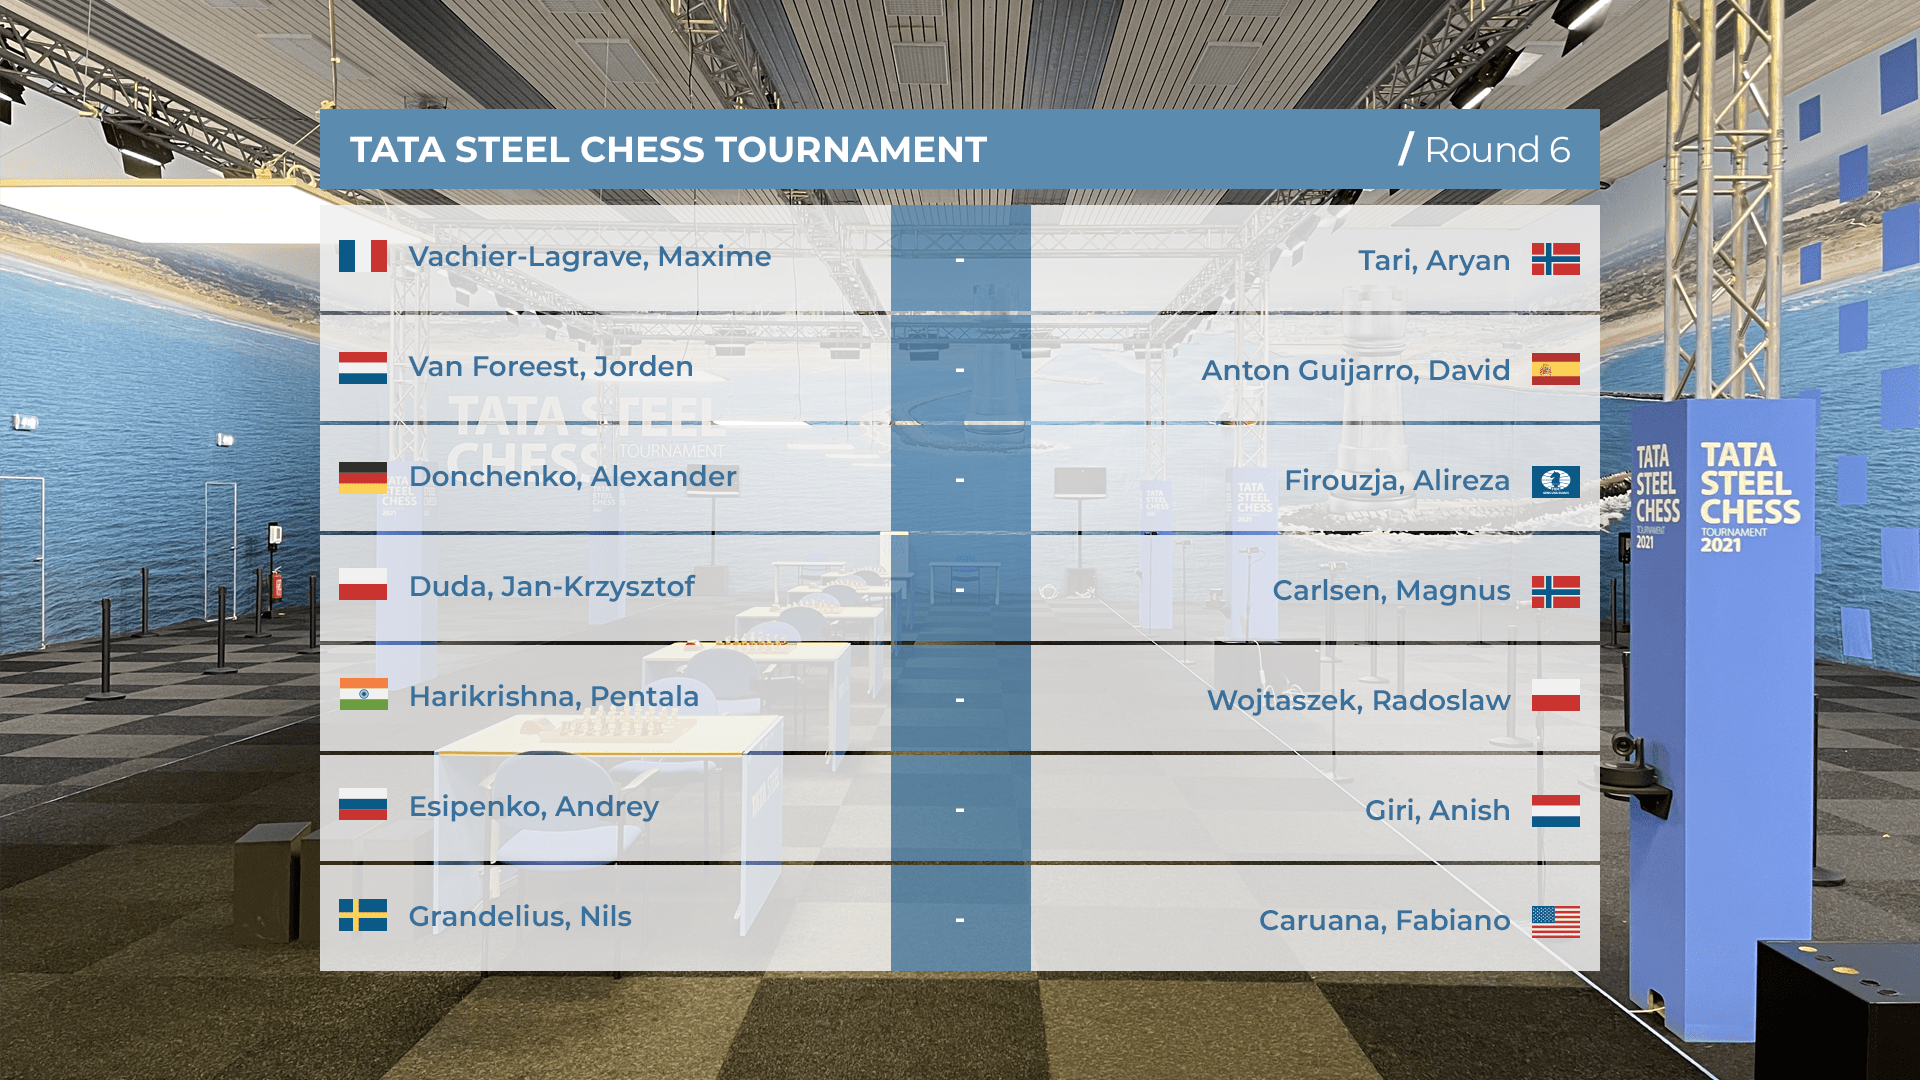 Tata Steel Chess 2021 round 6 pairings